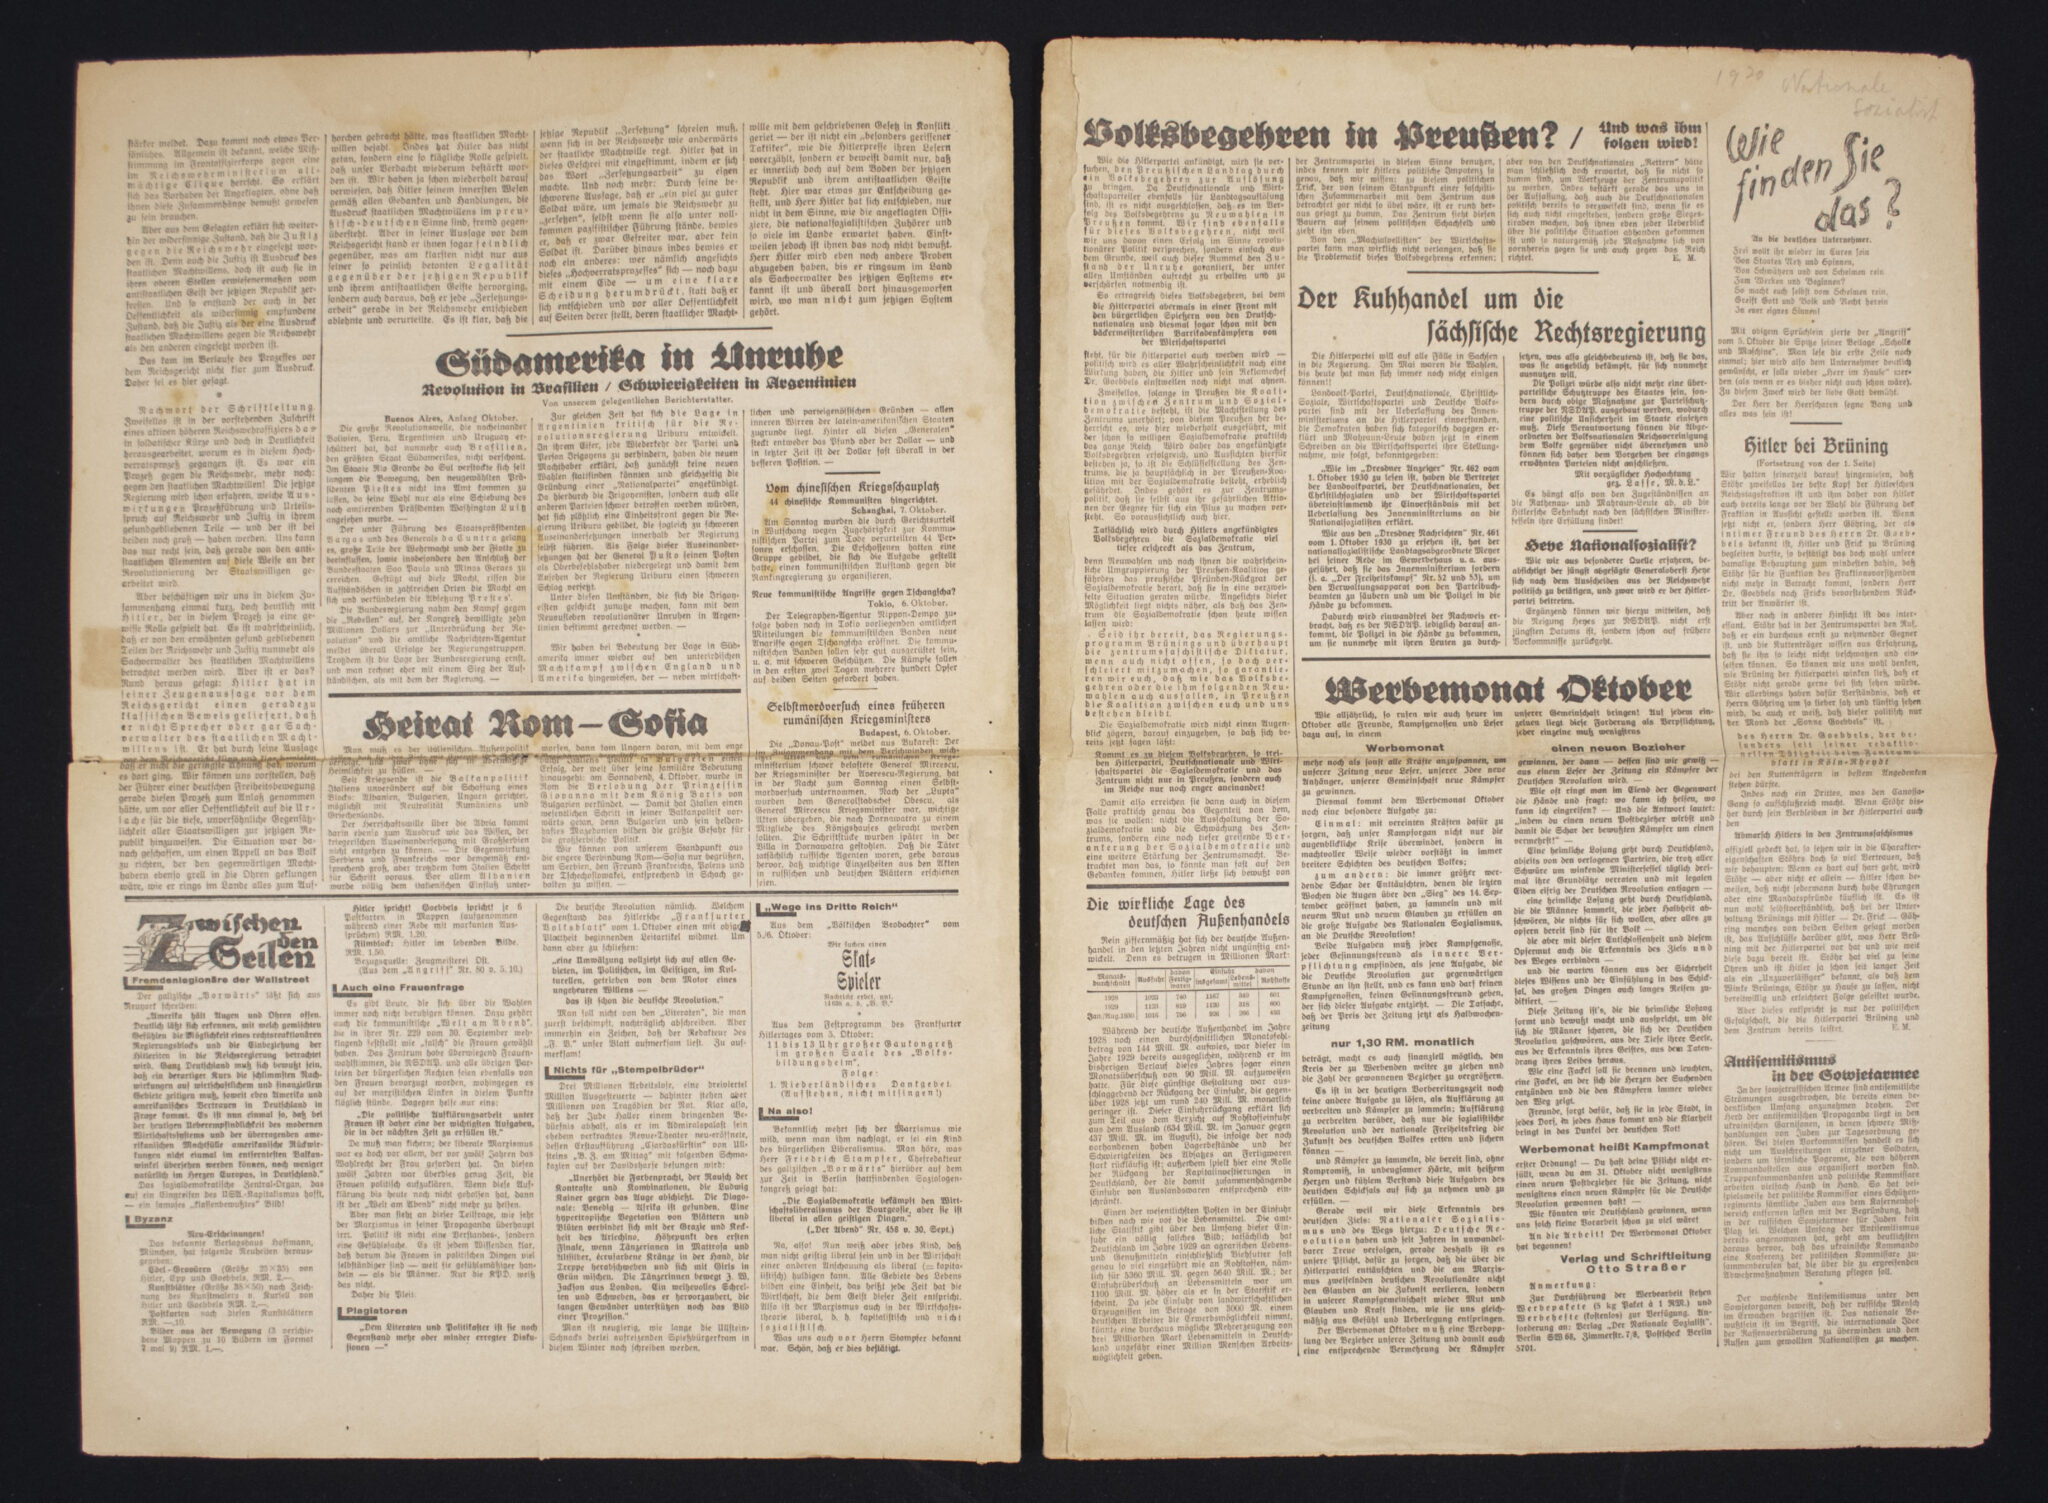 (Newspaper) Der Nationale Sozialist (1930) – RARE!